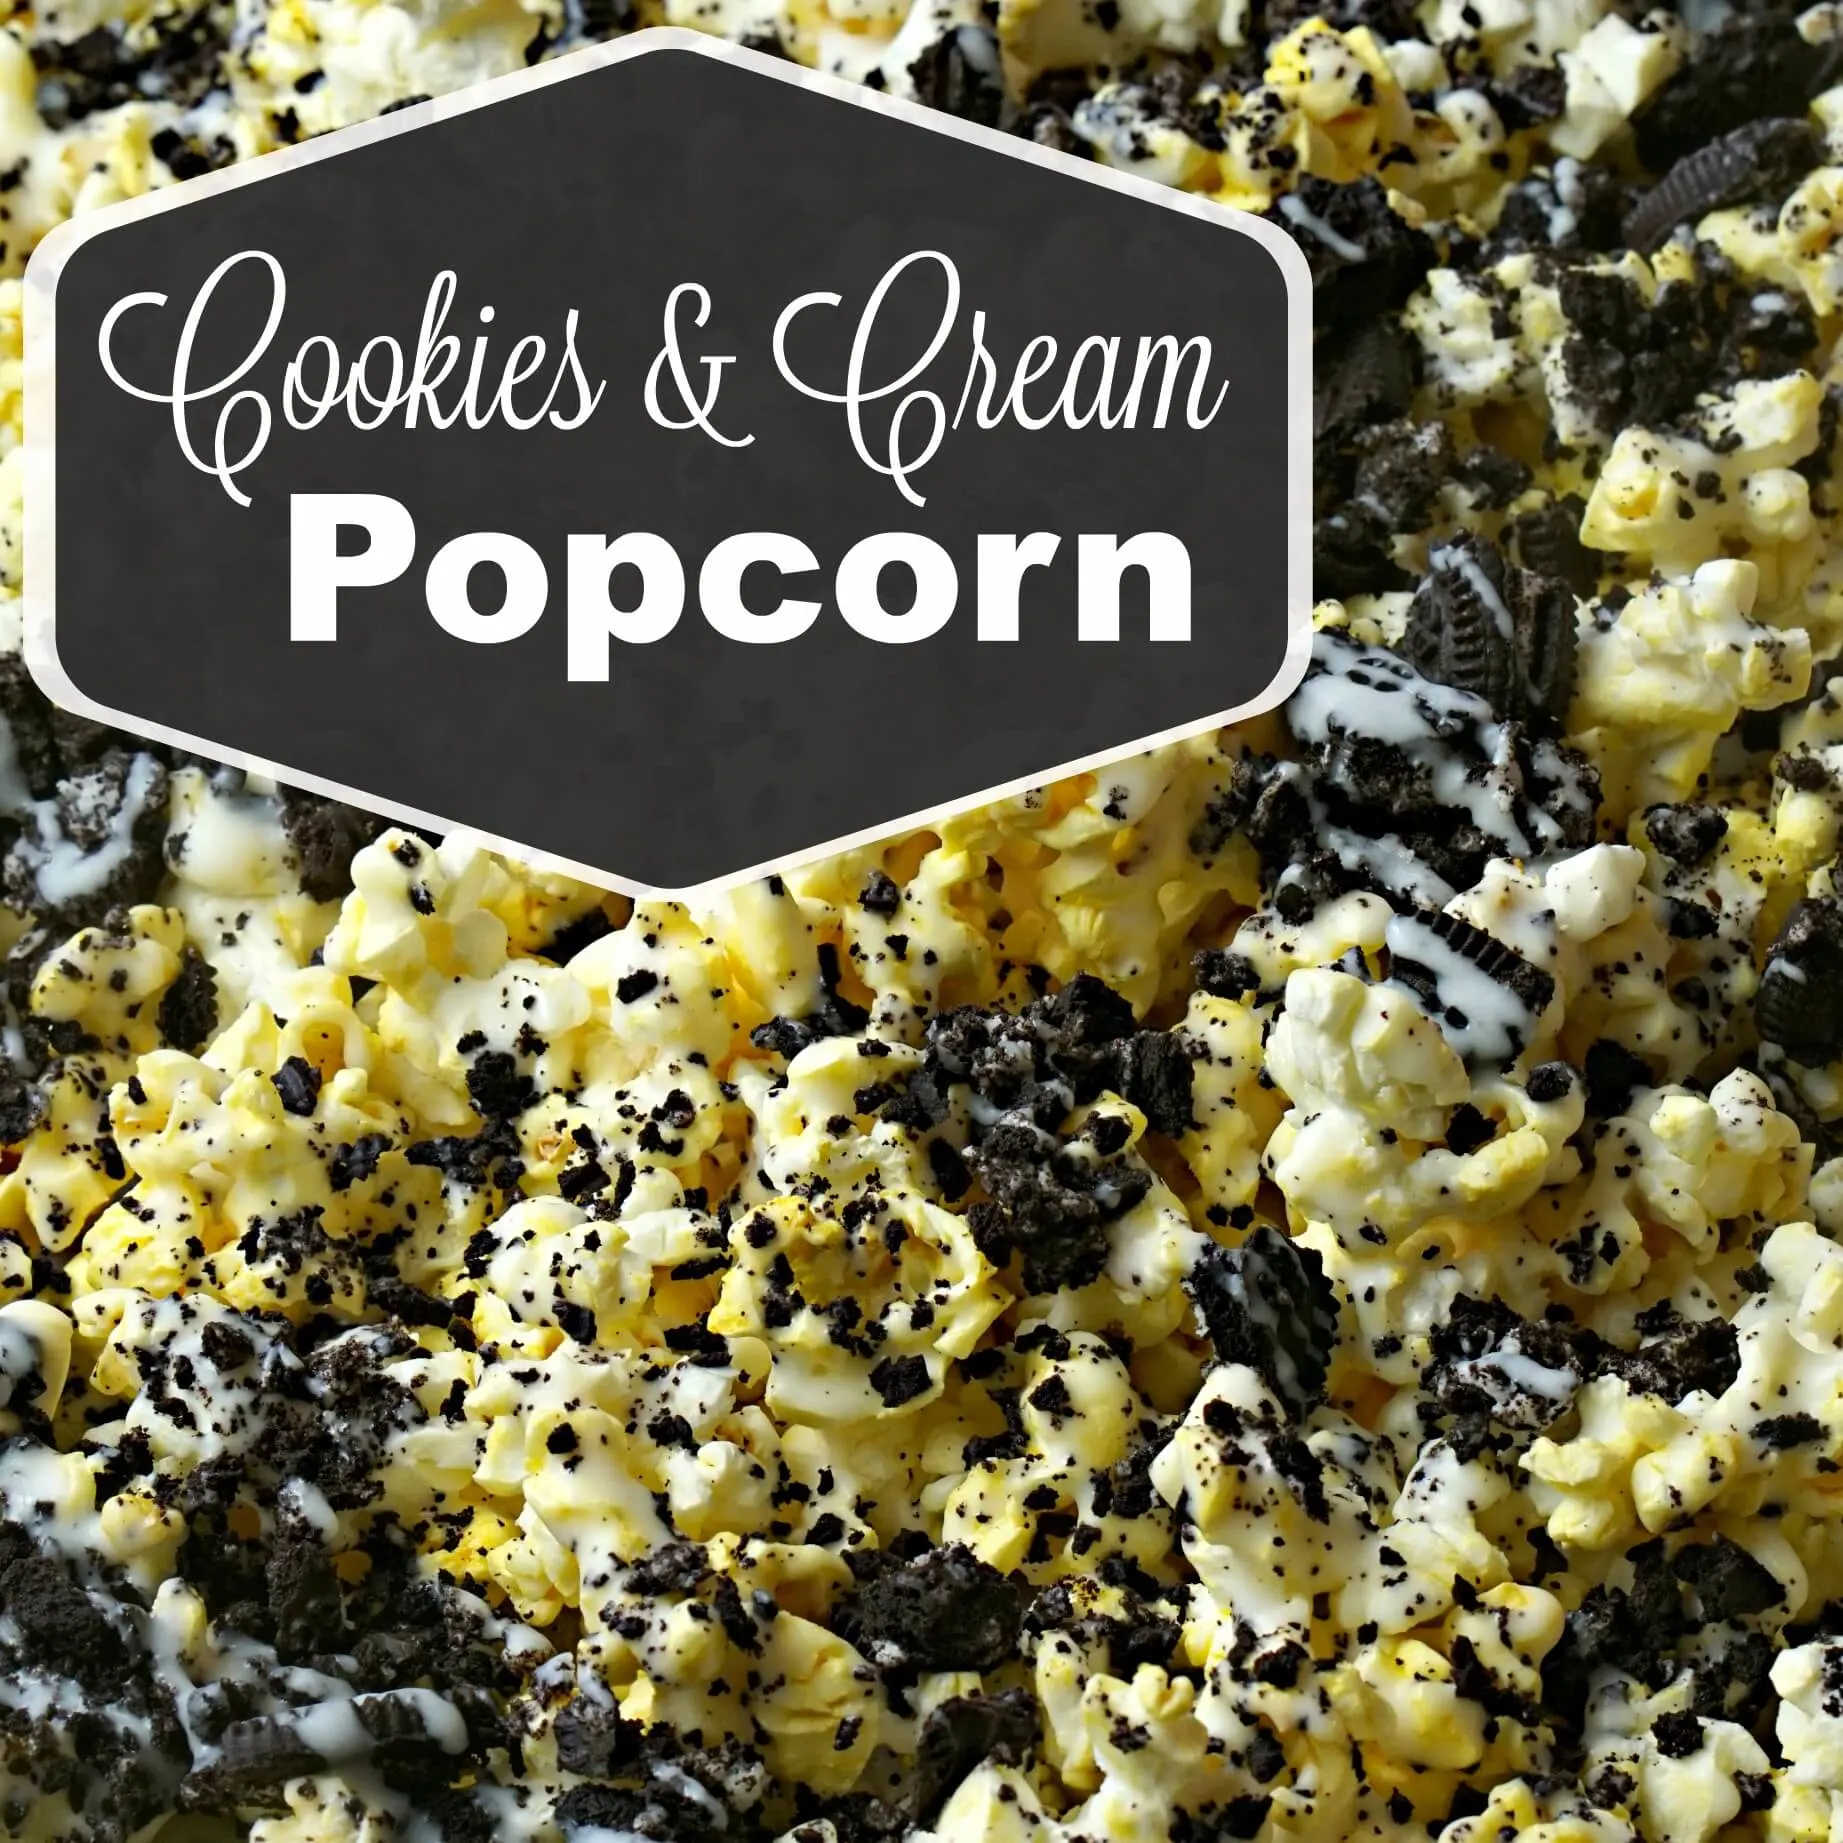 Cookies and Cream Popcorn Recipe